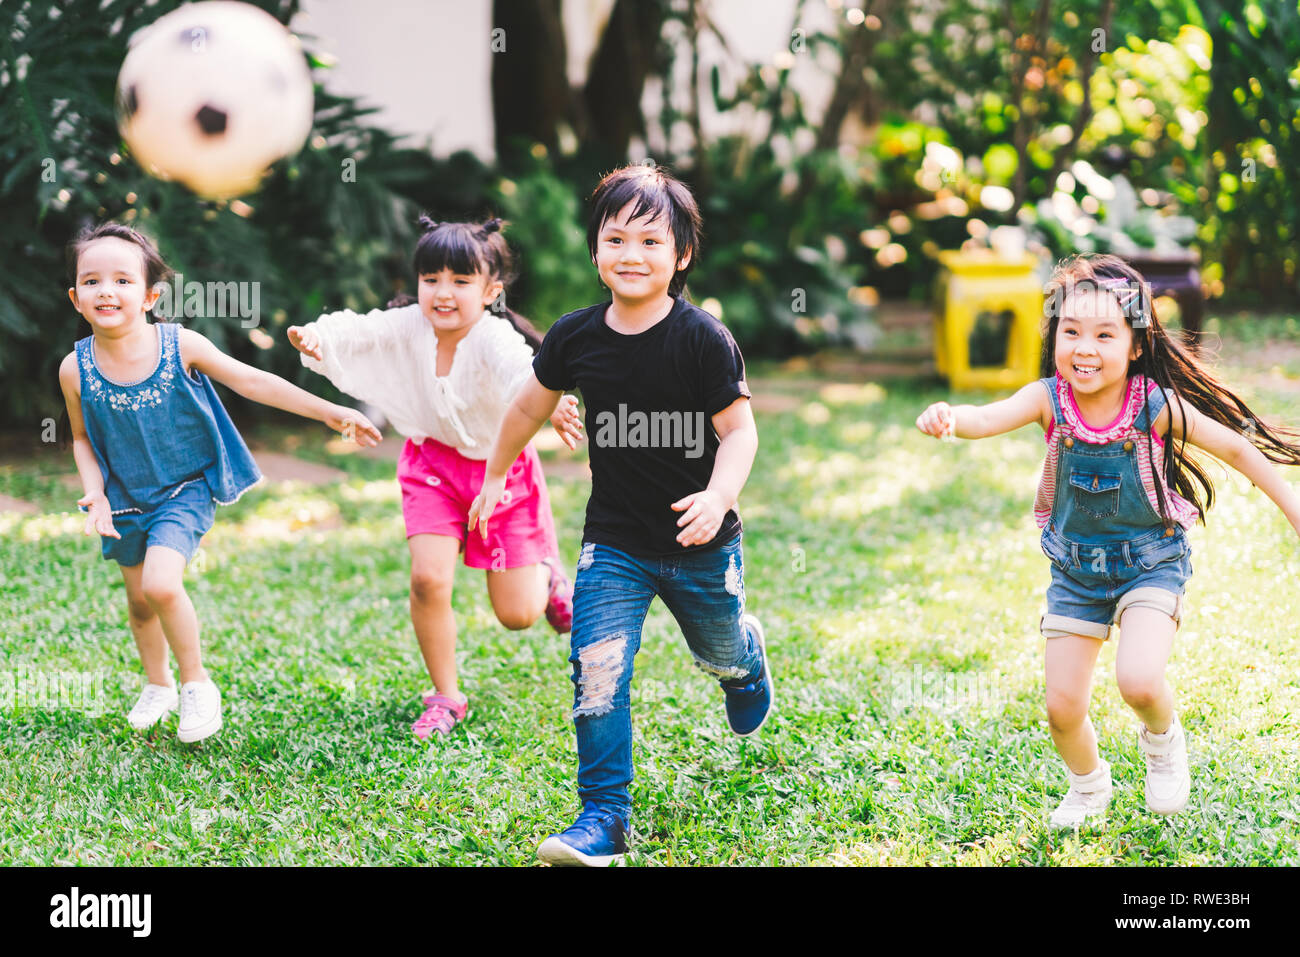 Asiatici e razza mista felice giovani bambini che correvano giocando a calcio insieme nel giardino. Multi-etnico gruppo di bambini, outdoor sport esercitare, gioco libero Foto Stock